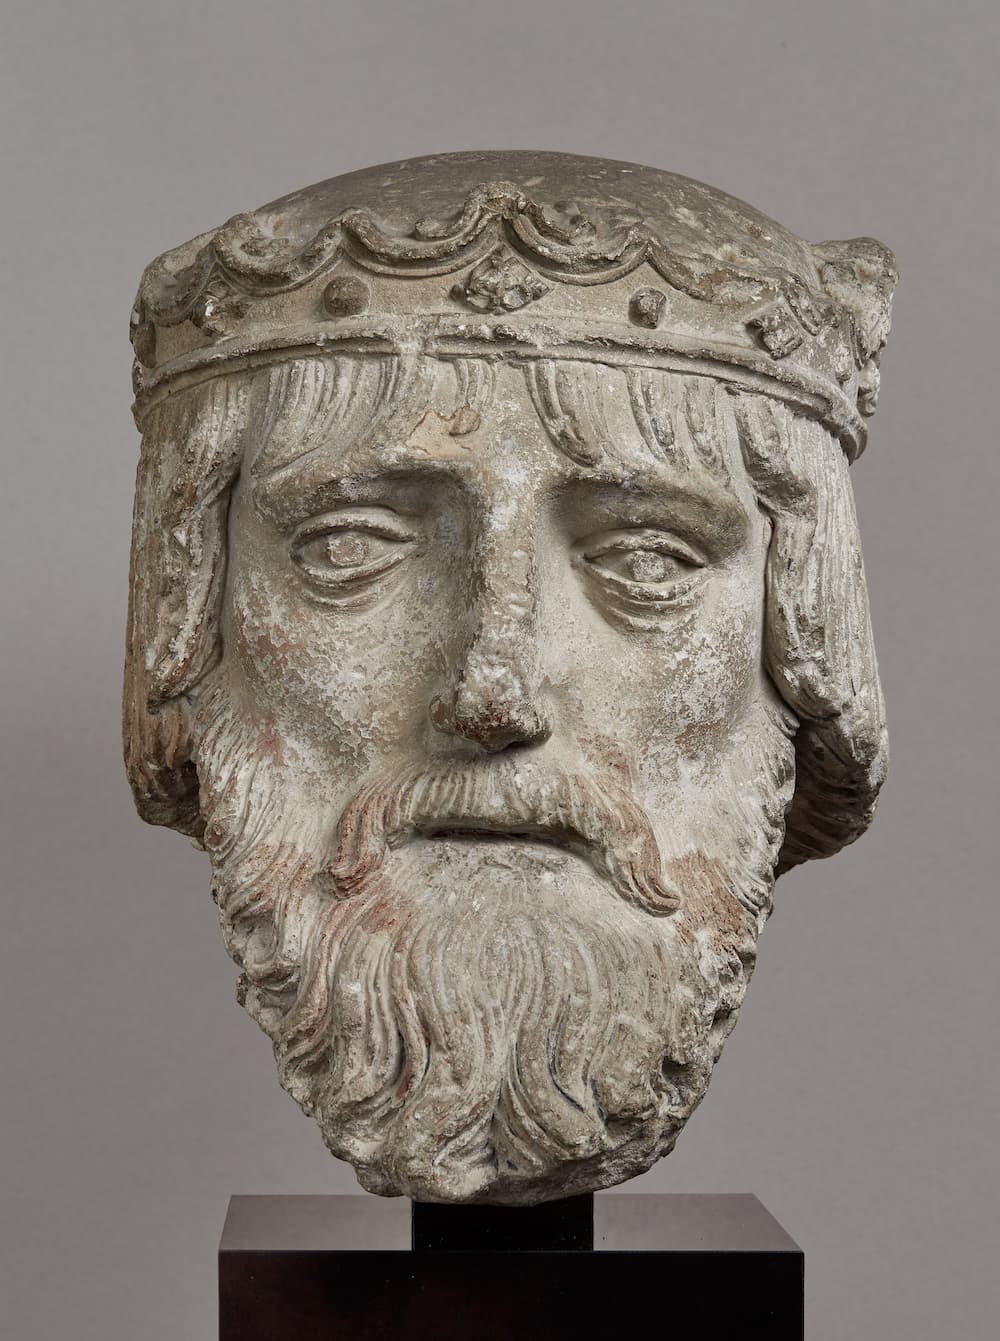 Tête de roi, France, XIVe-XVe siècle, pierre